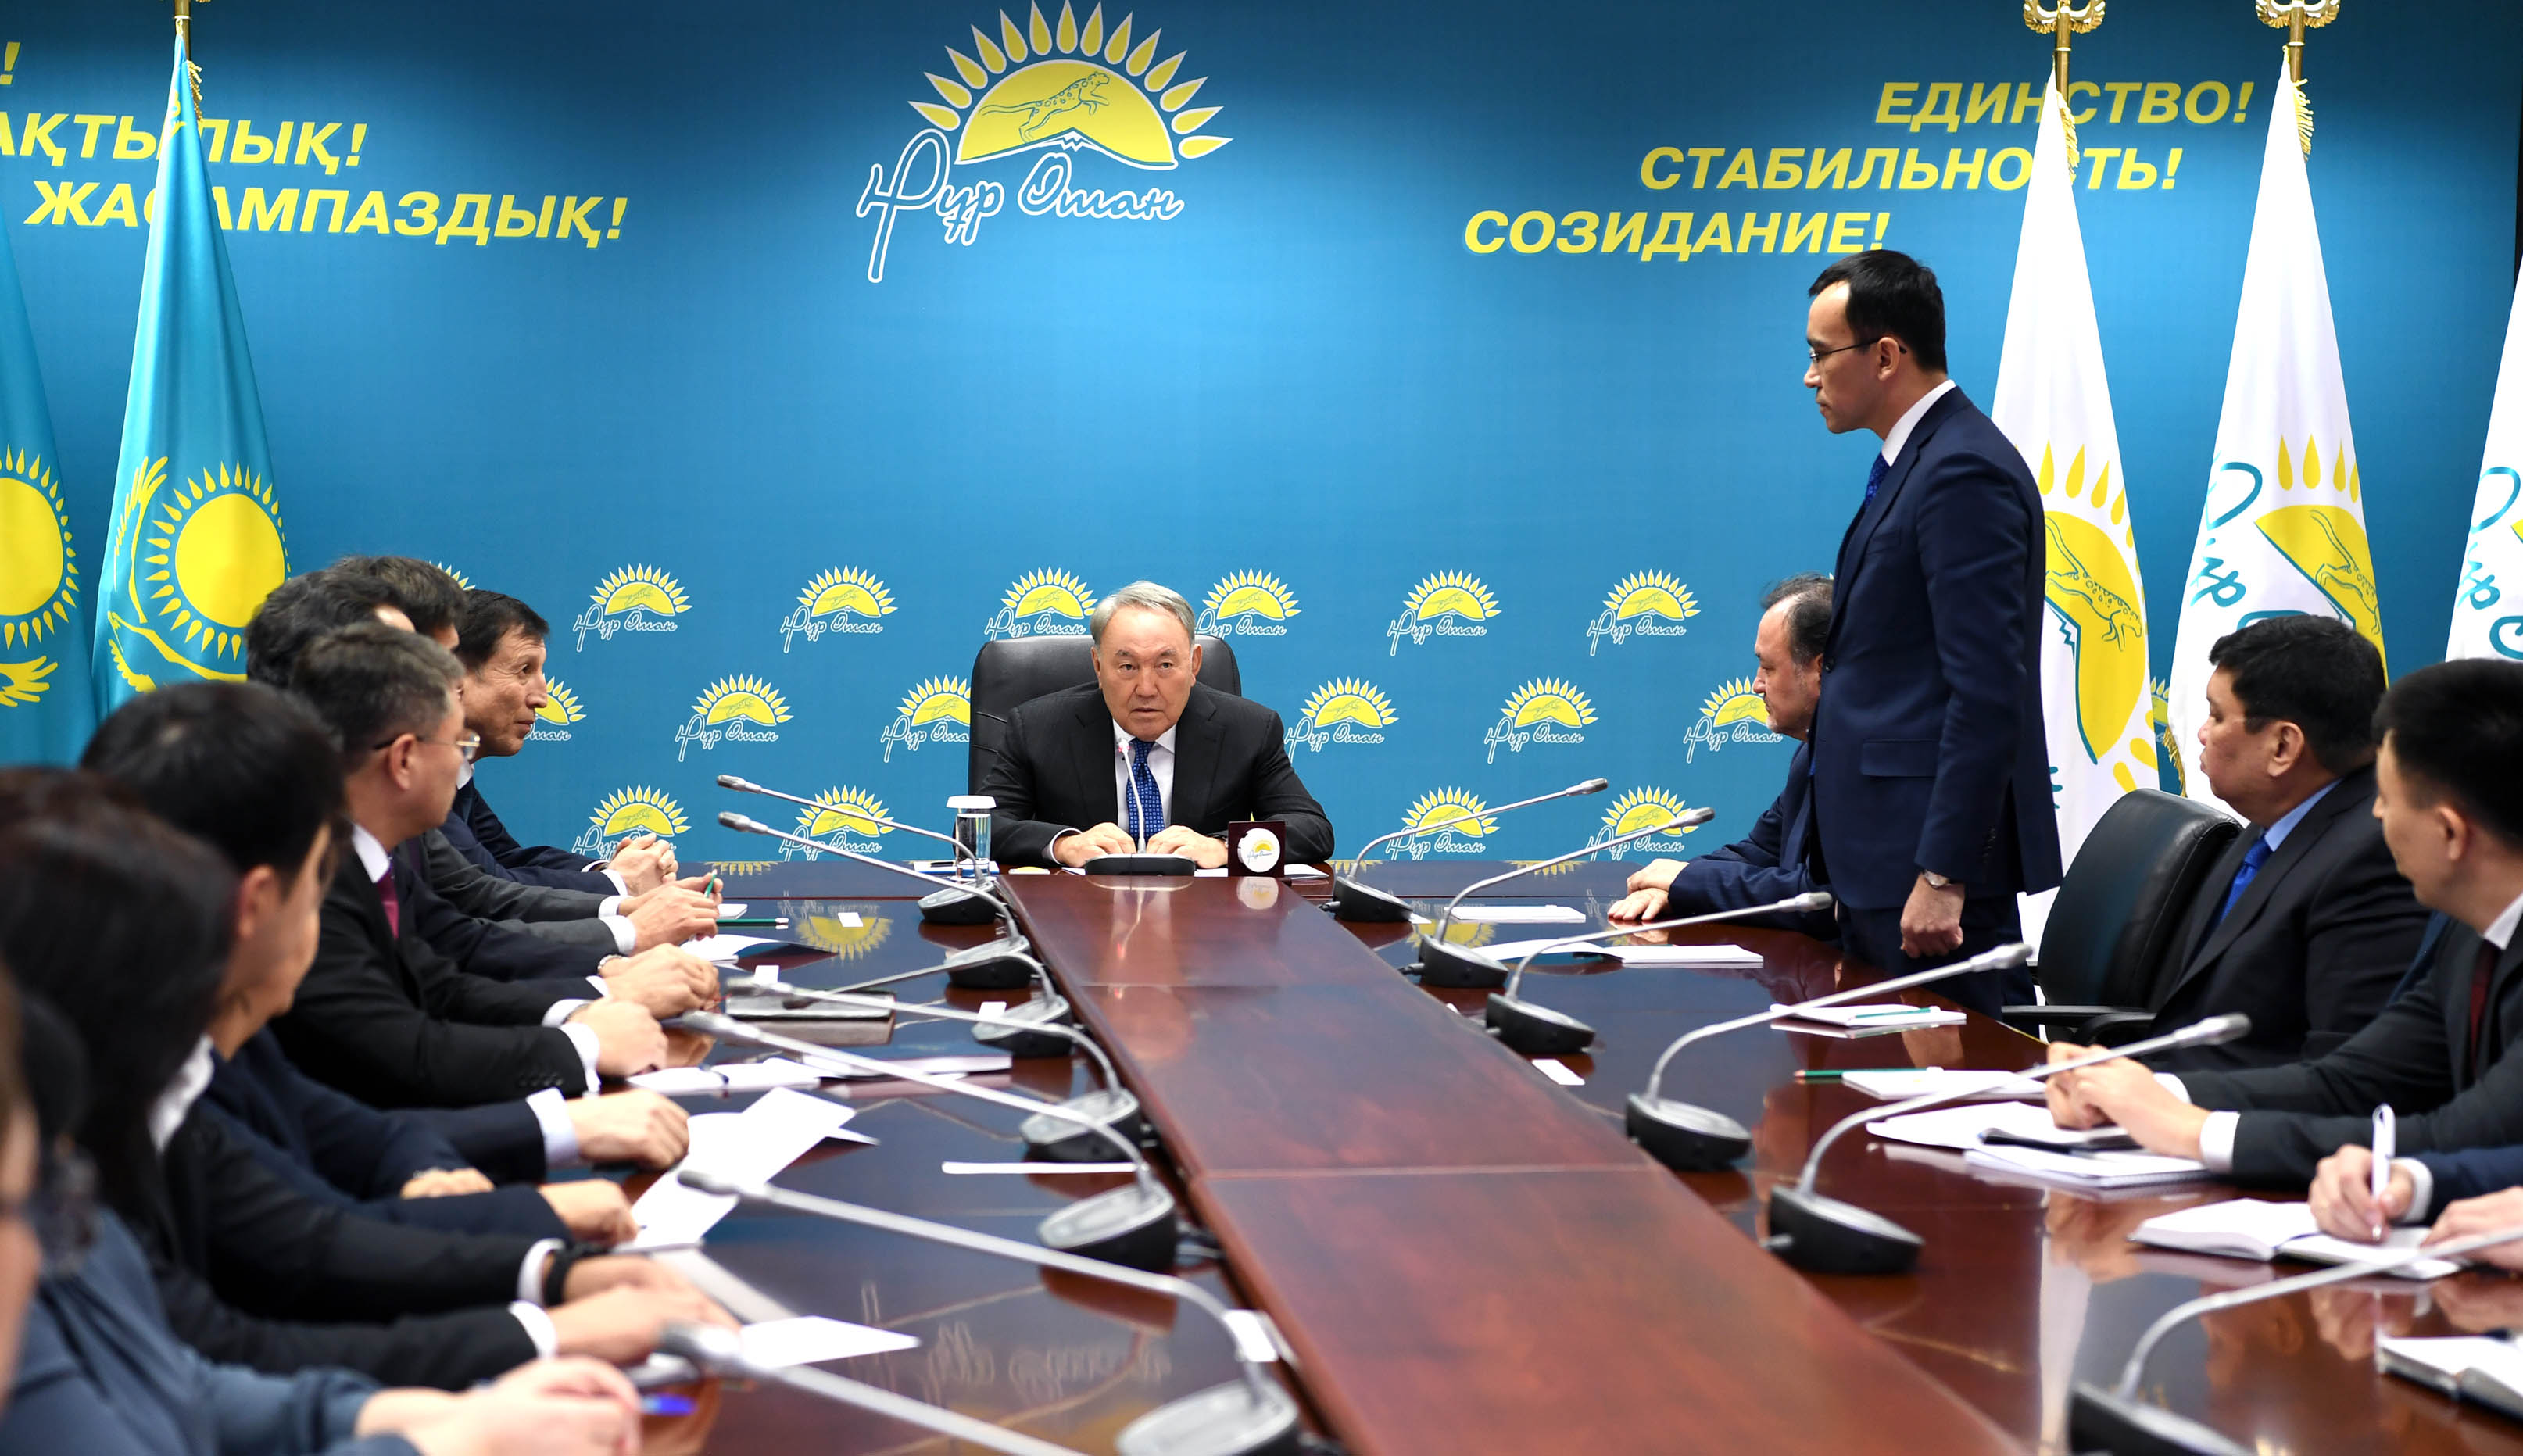 Қазақстан Республикасының Президенті  Нұрсұлтан Назарбаев «Нұр Отан» партиясының орталық аппаратында болды.